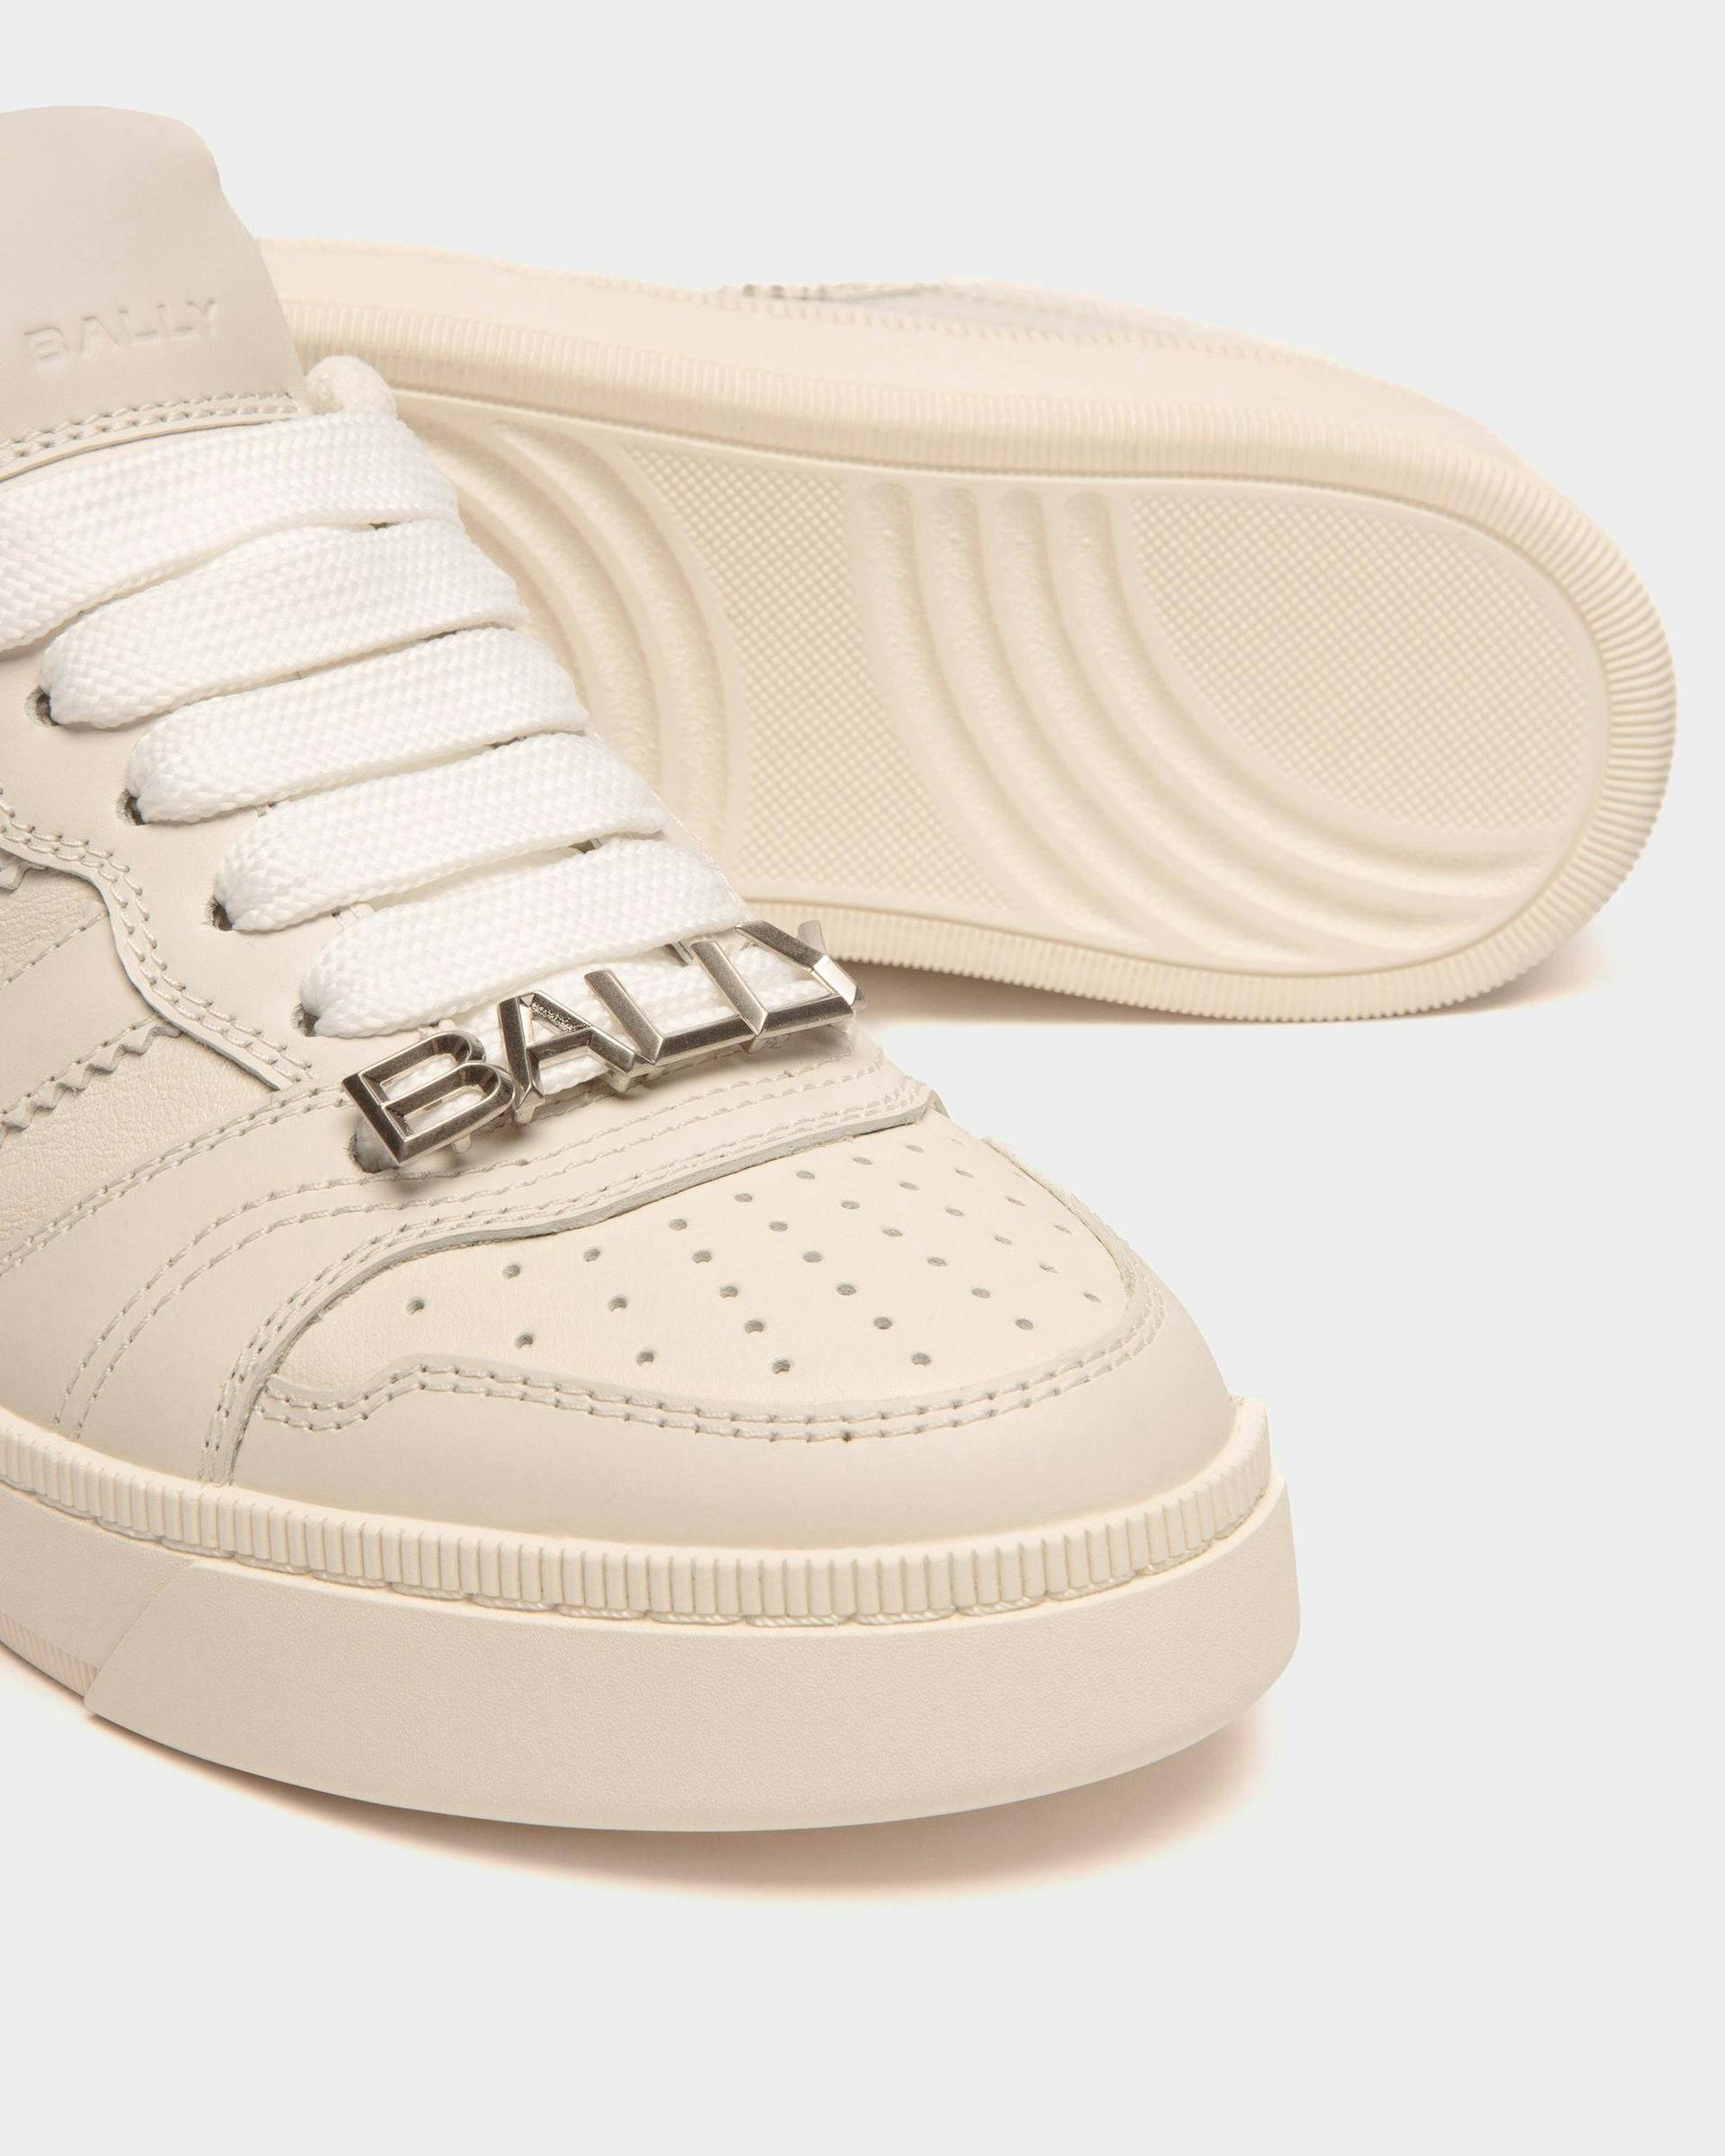 Women's Raise Sneaker In White Leather | Bally | Still Life Below